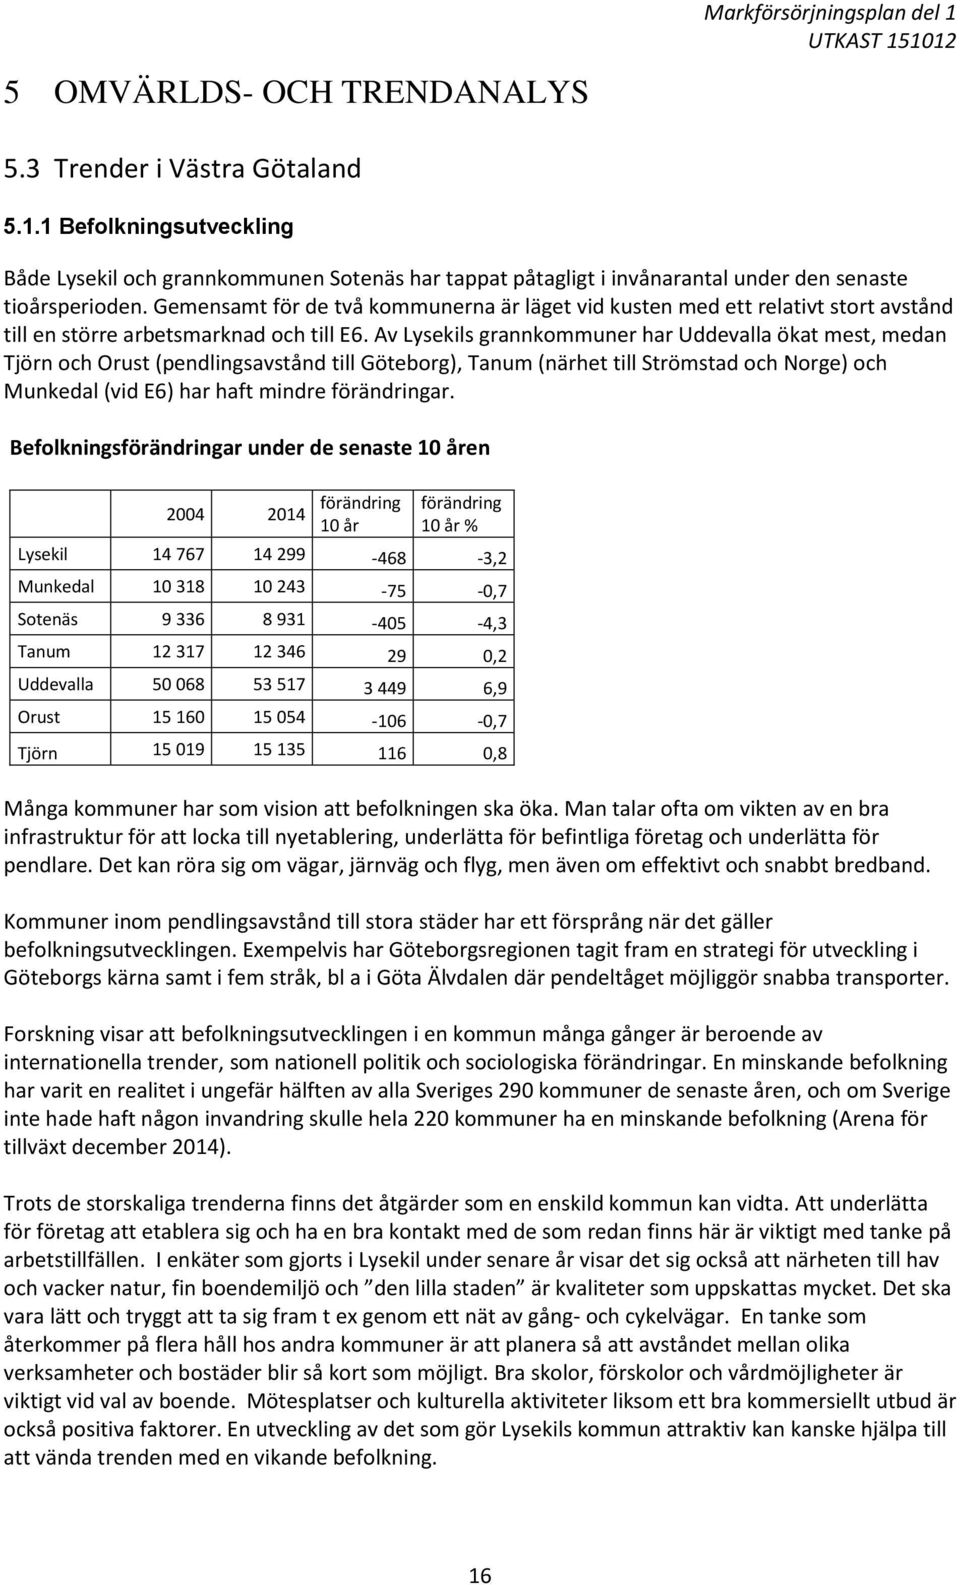 Av Lysekils grannkommuner har Uddevalla ökat mest, medan Tjörn och Orust (pendlingsavstånd till Göteborg), Tanum (närhet till Strömstad och Norge) och Munkedal (vid E6) har haft mindre förändringar.